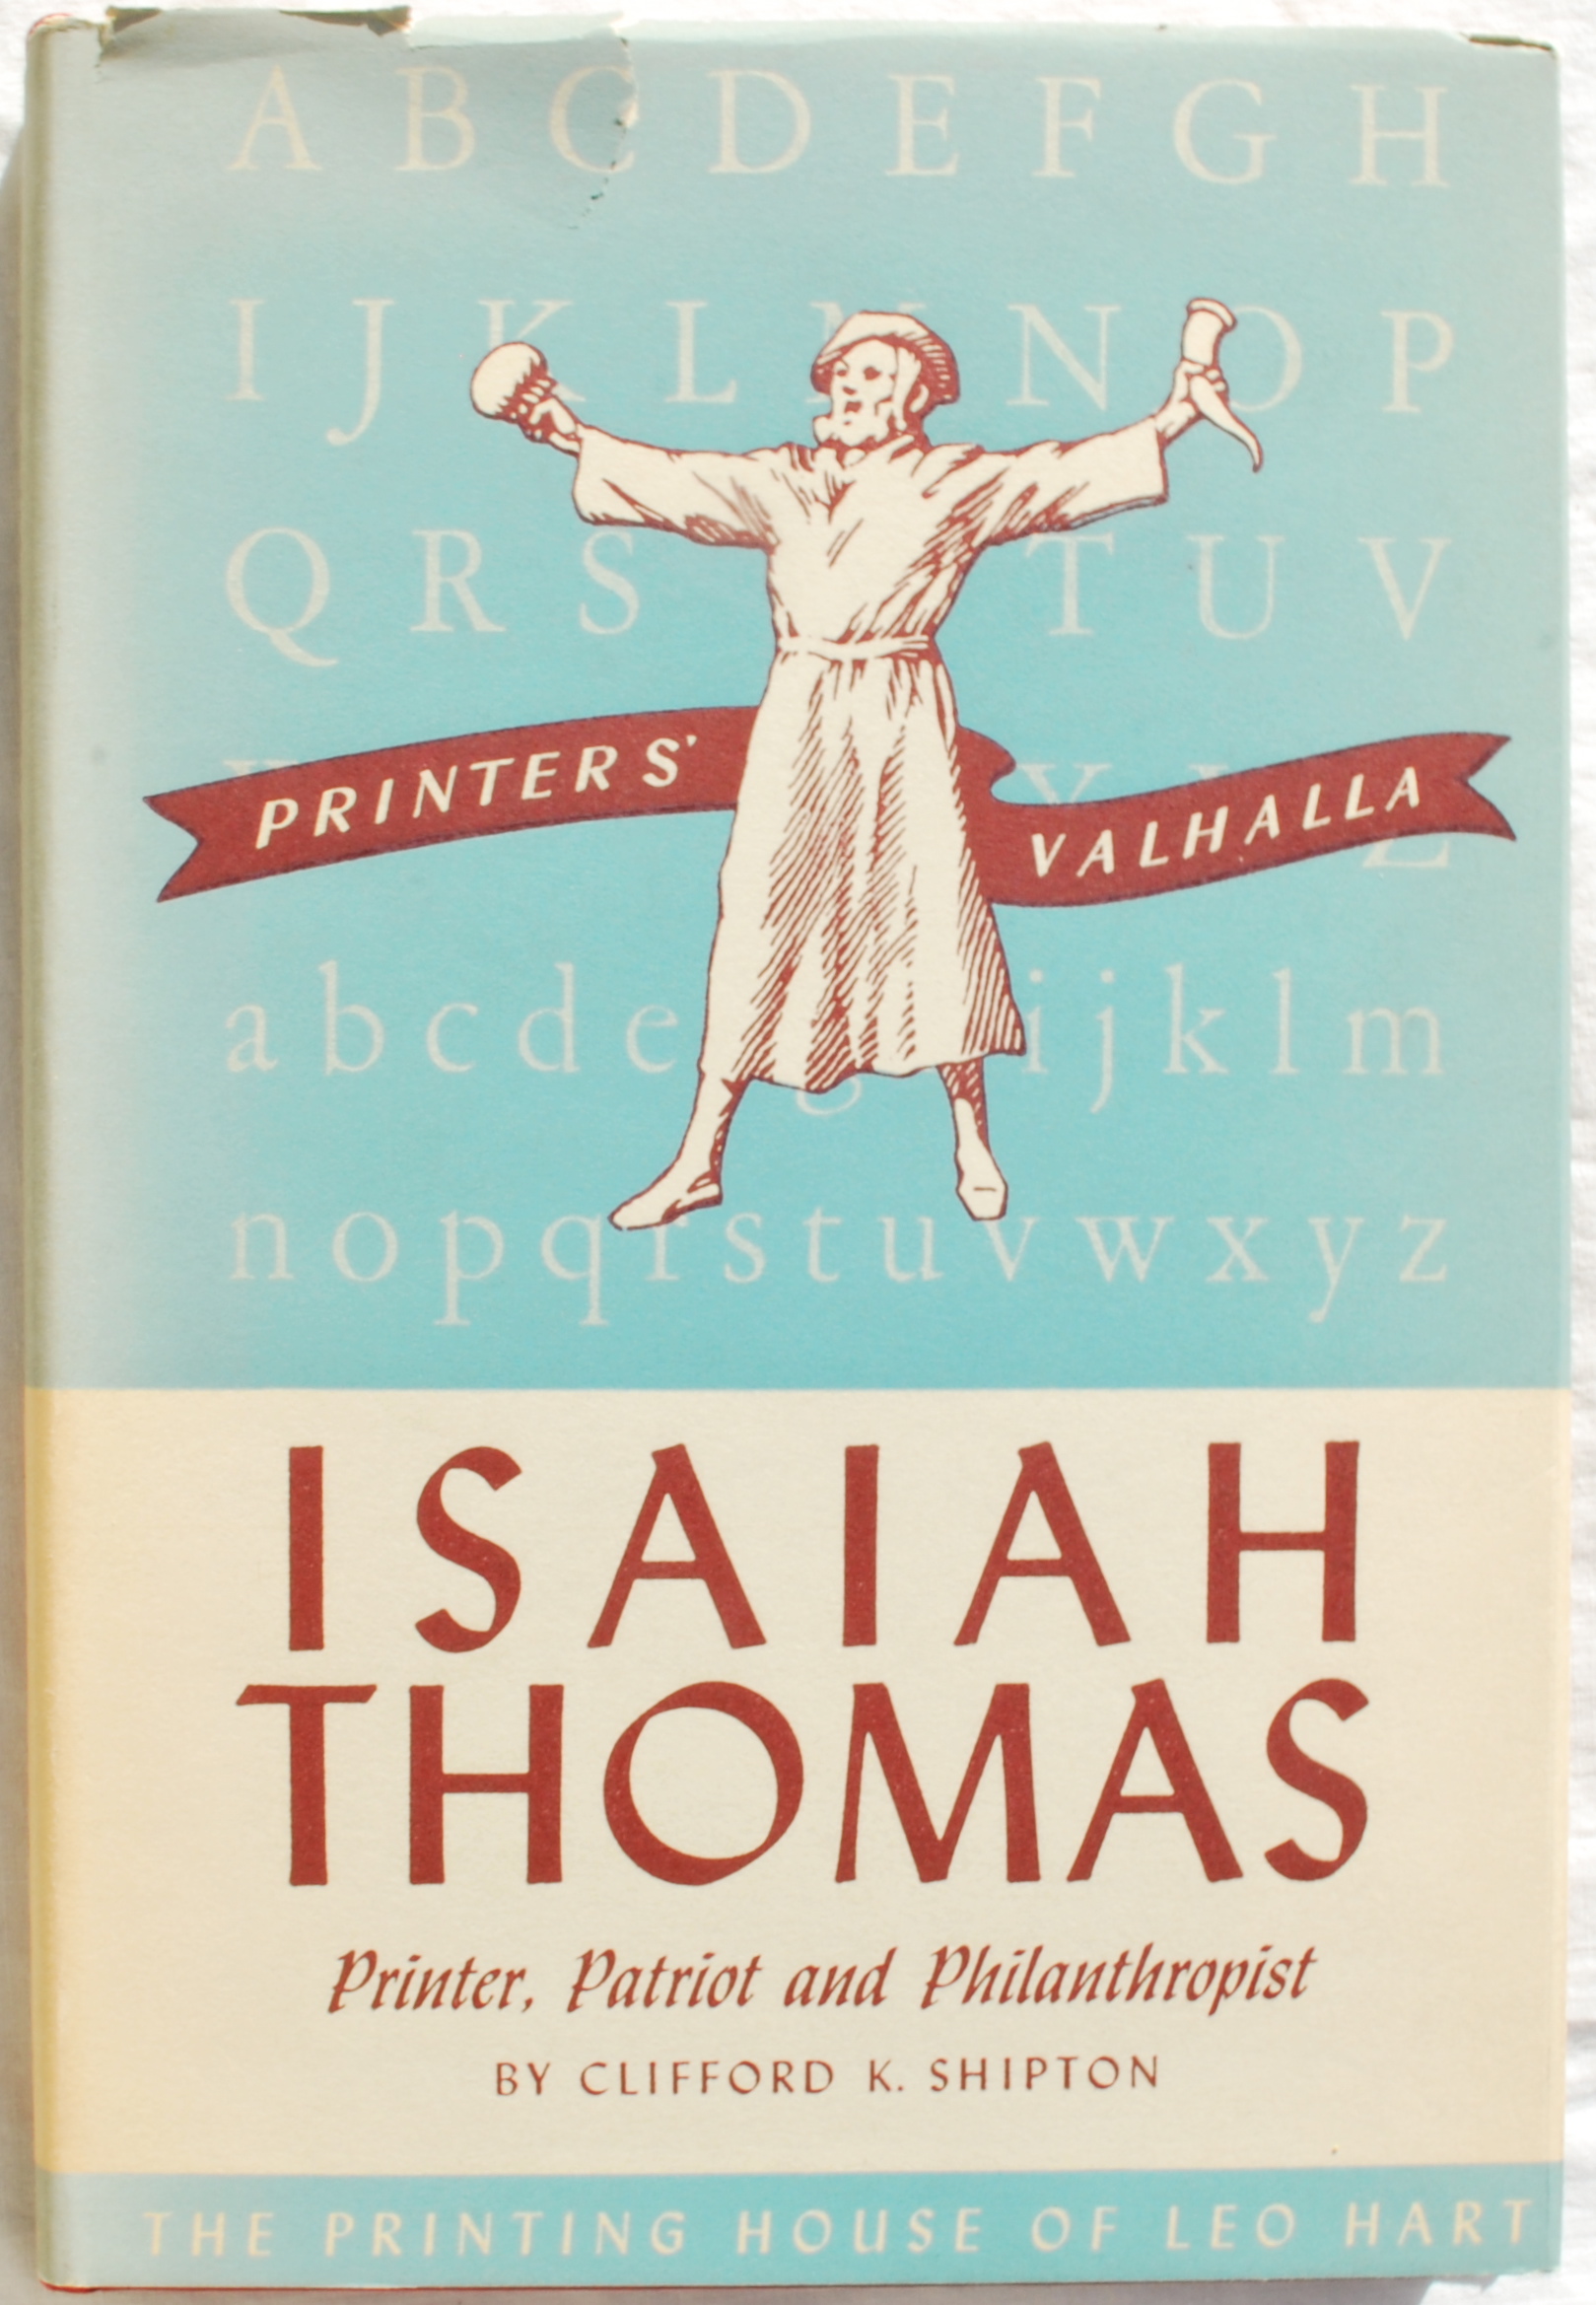 Isaiah Thomas: Printer, Patriot and Philanthropist 1749-1831